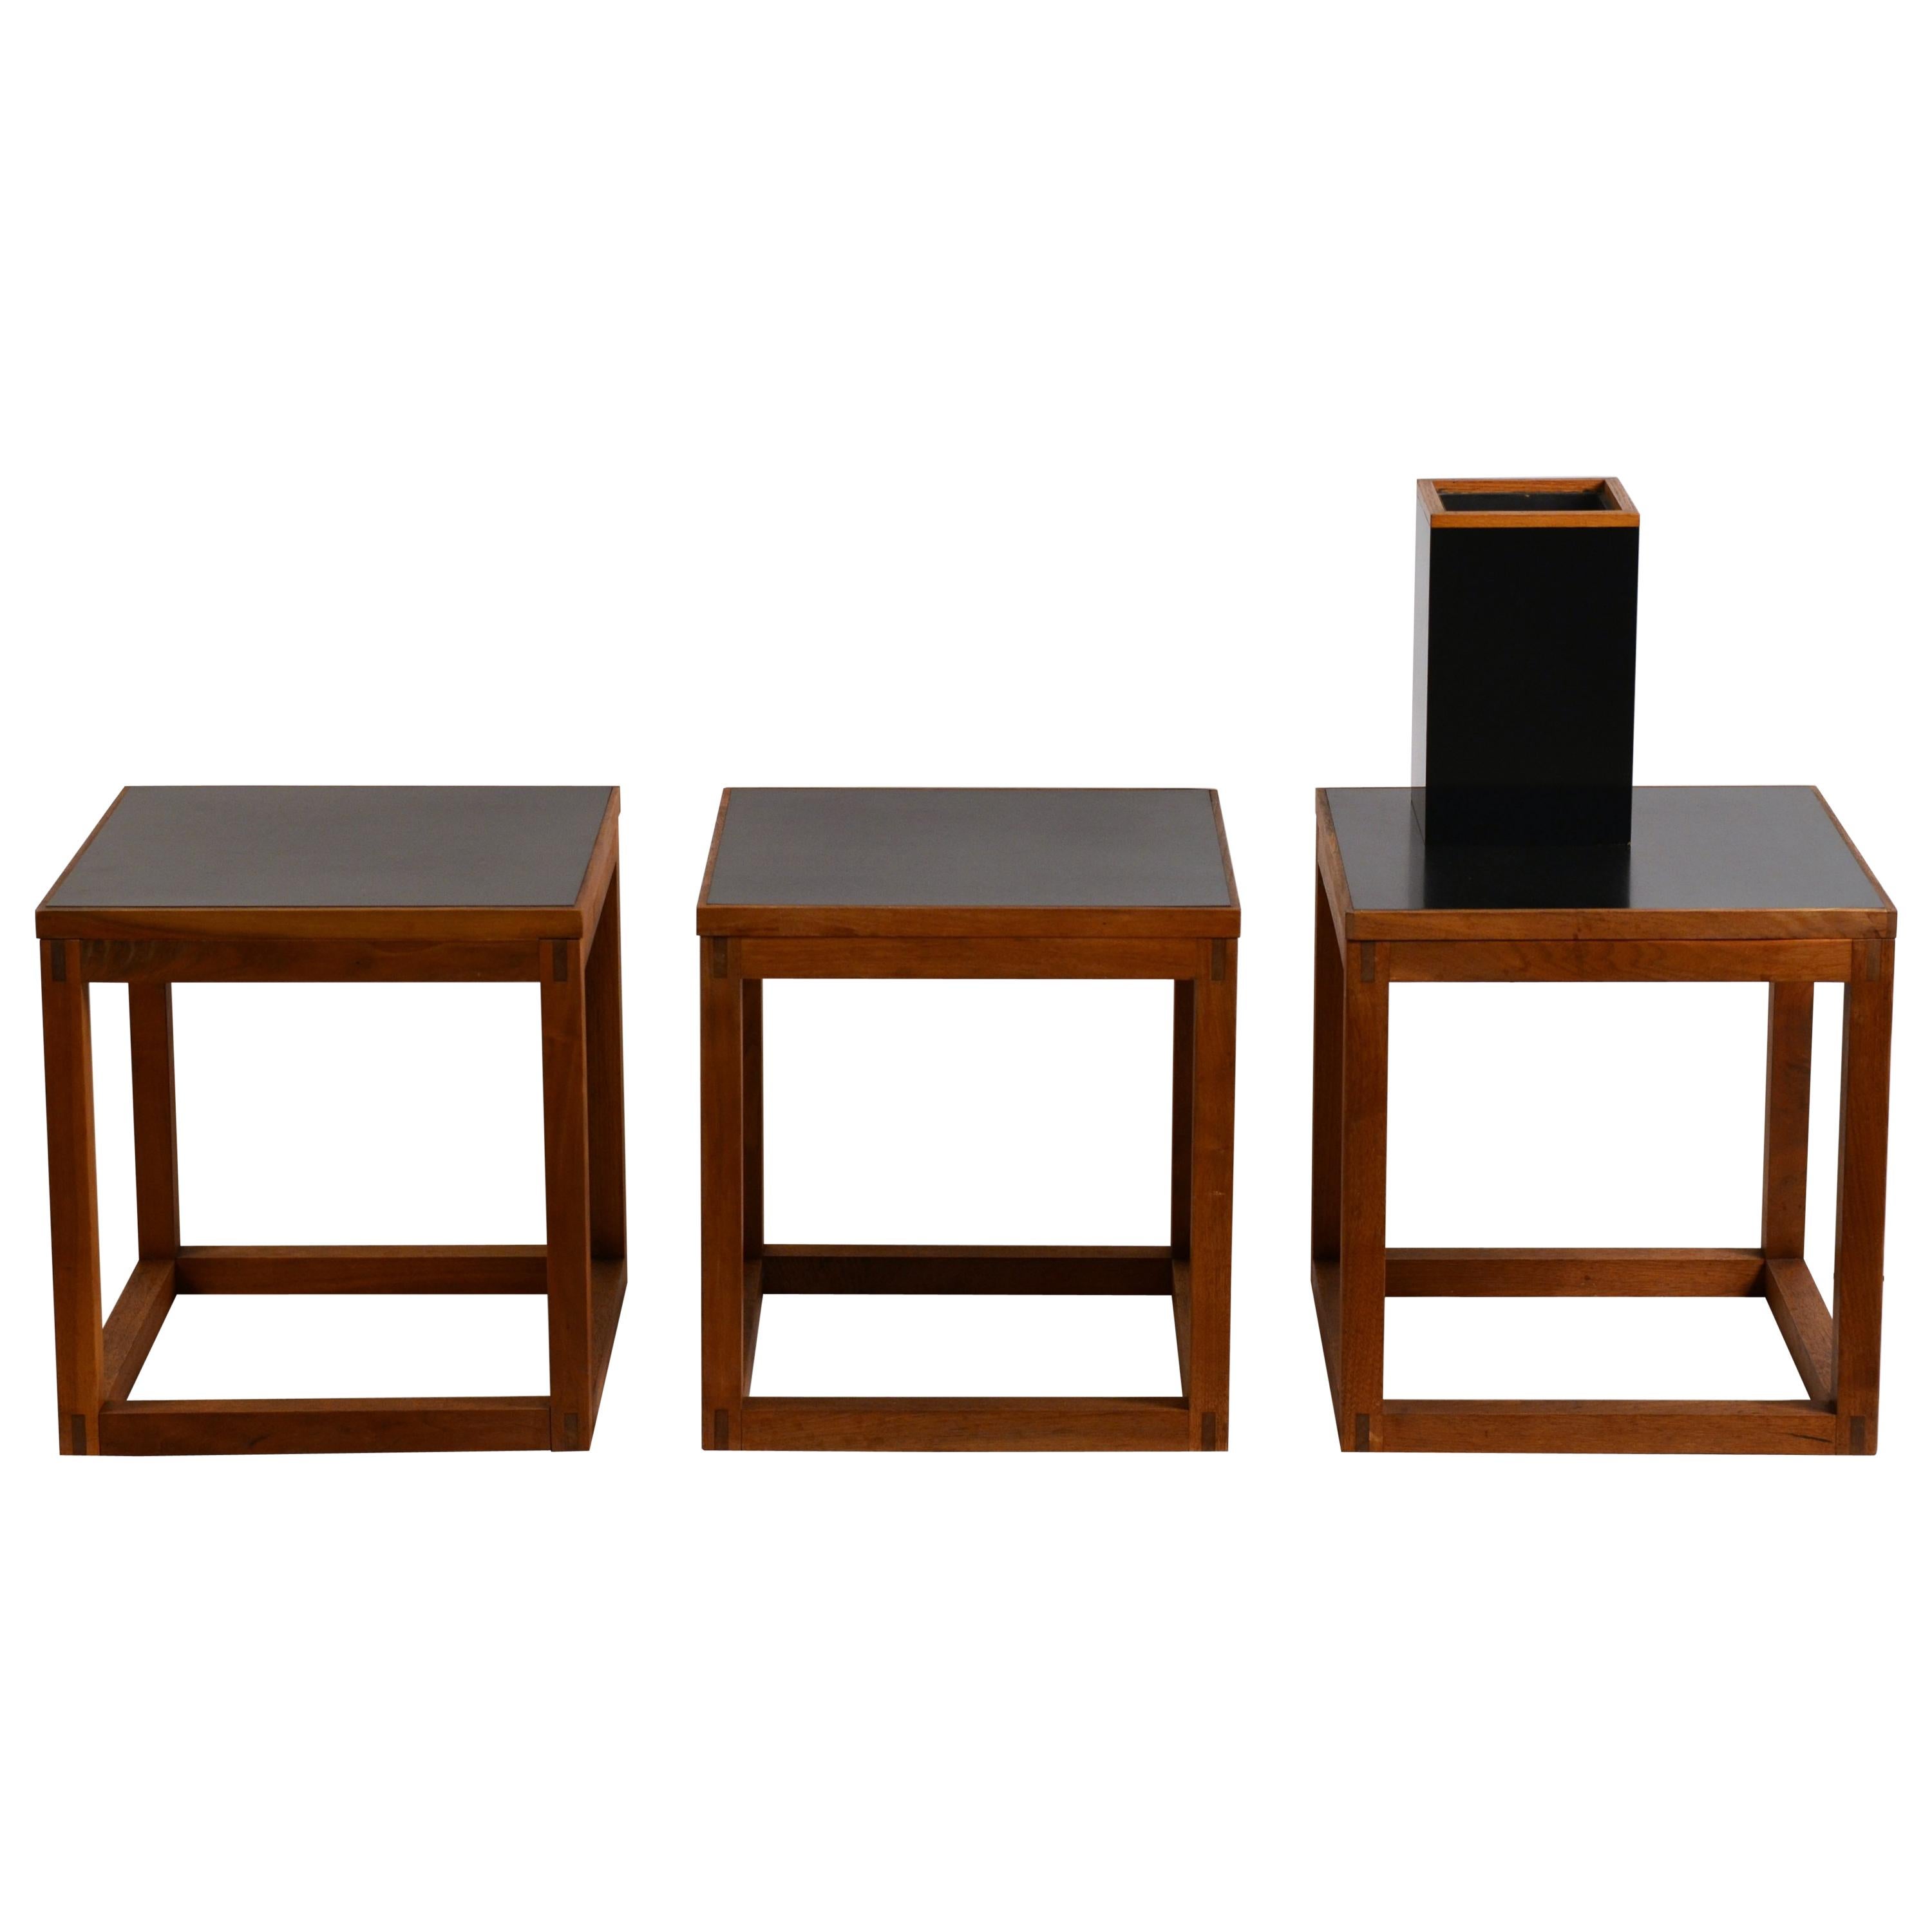 Ensemble de 3 tables basses ou tables d'appoint cubiques minimalistes en teck et stratifié